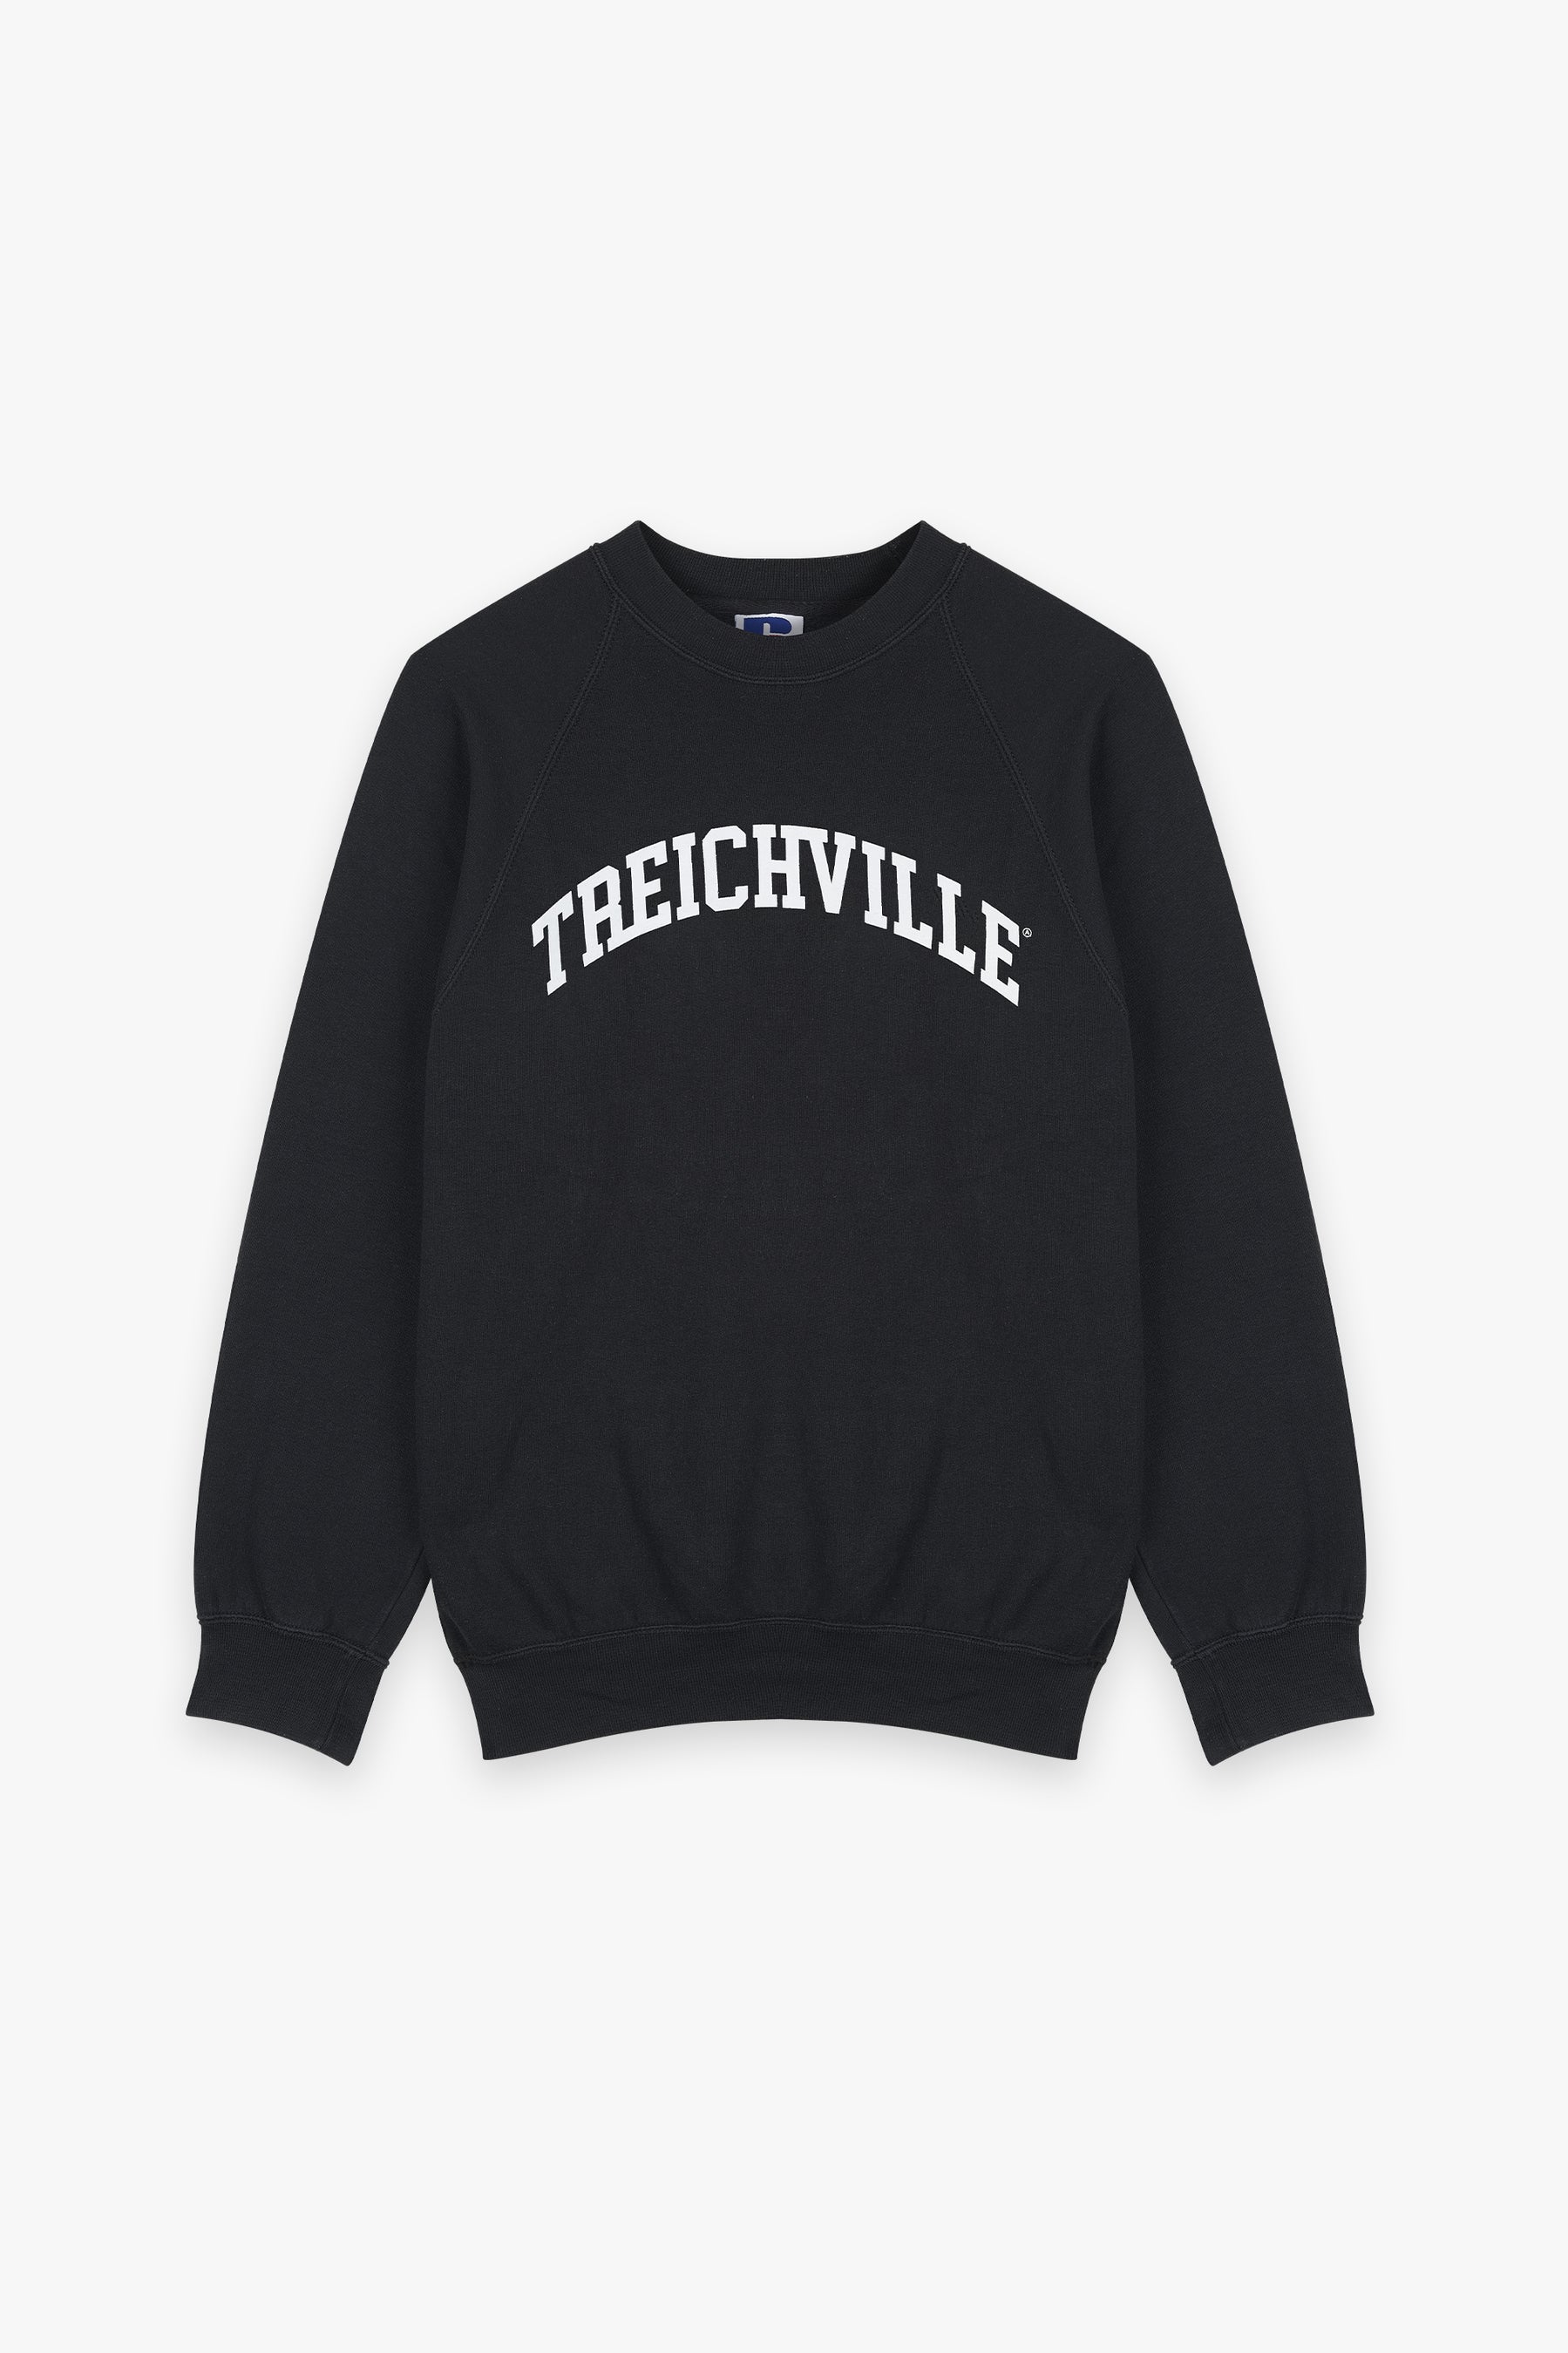 Treichville Raglan Sleeve Sweatshirt Black